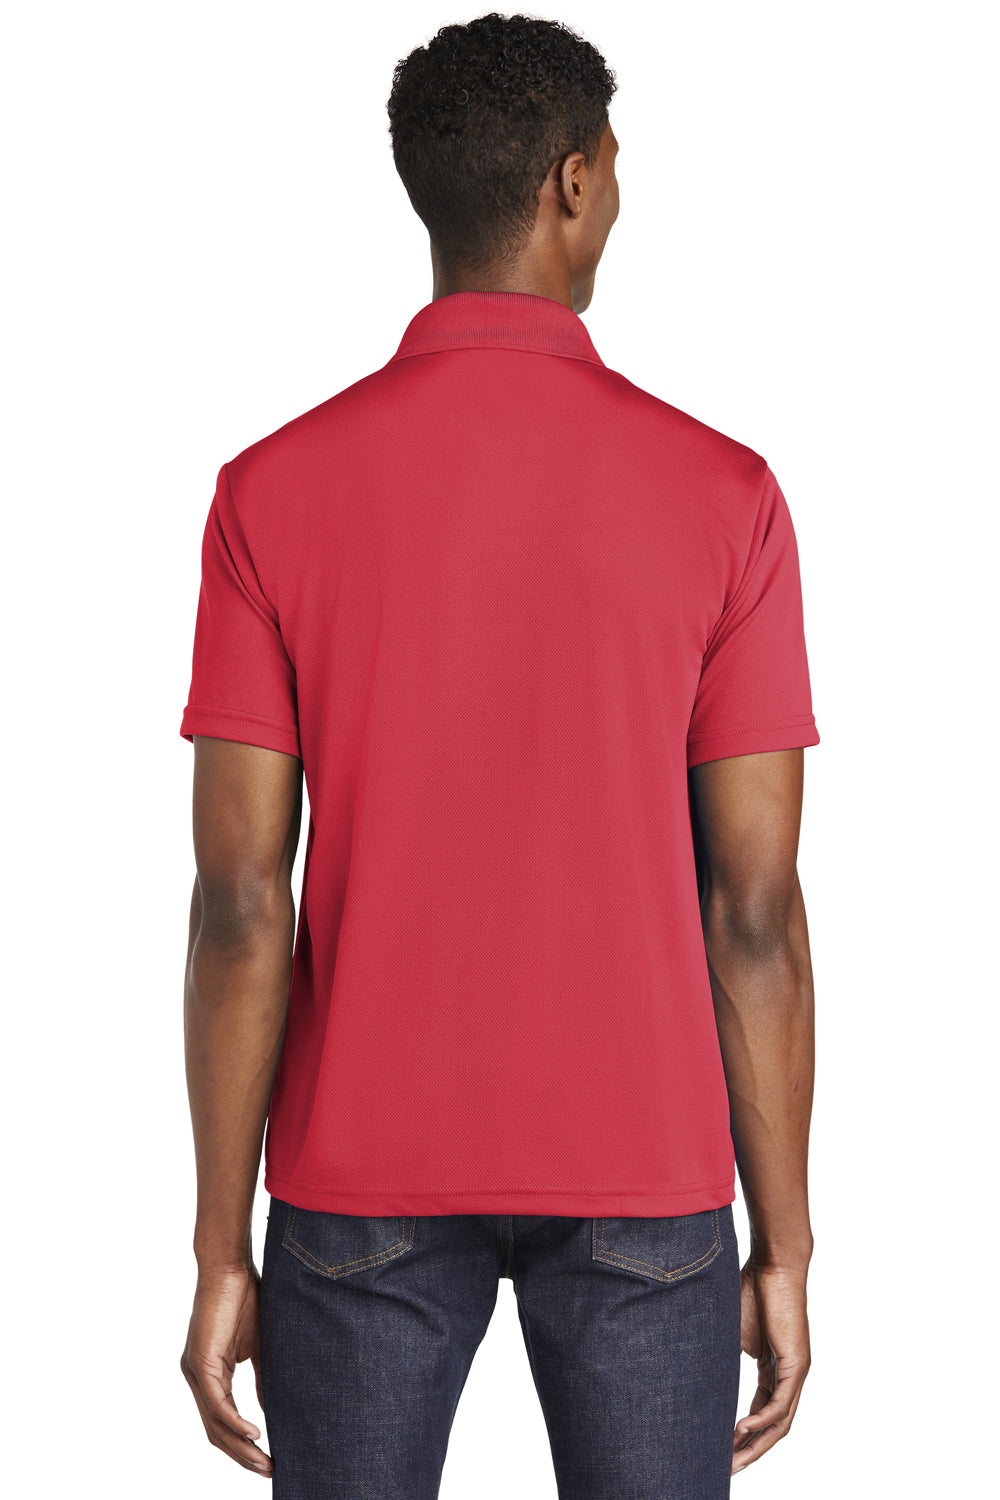 Sport-Tek ST640 Mens RacerMesh Moisture Wicking Short Sleeve Polo Shirt Red Back